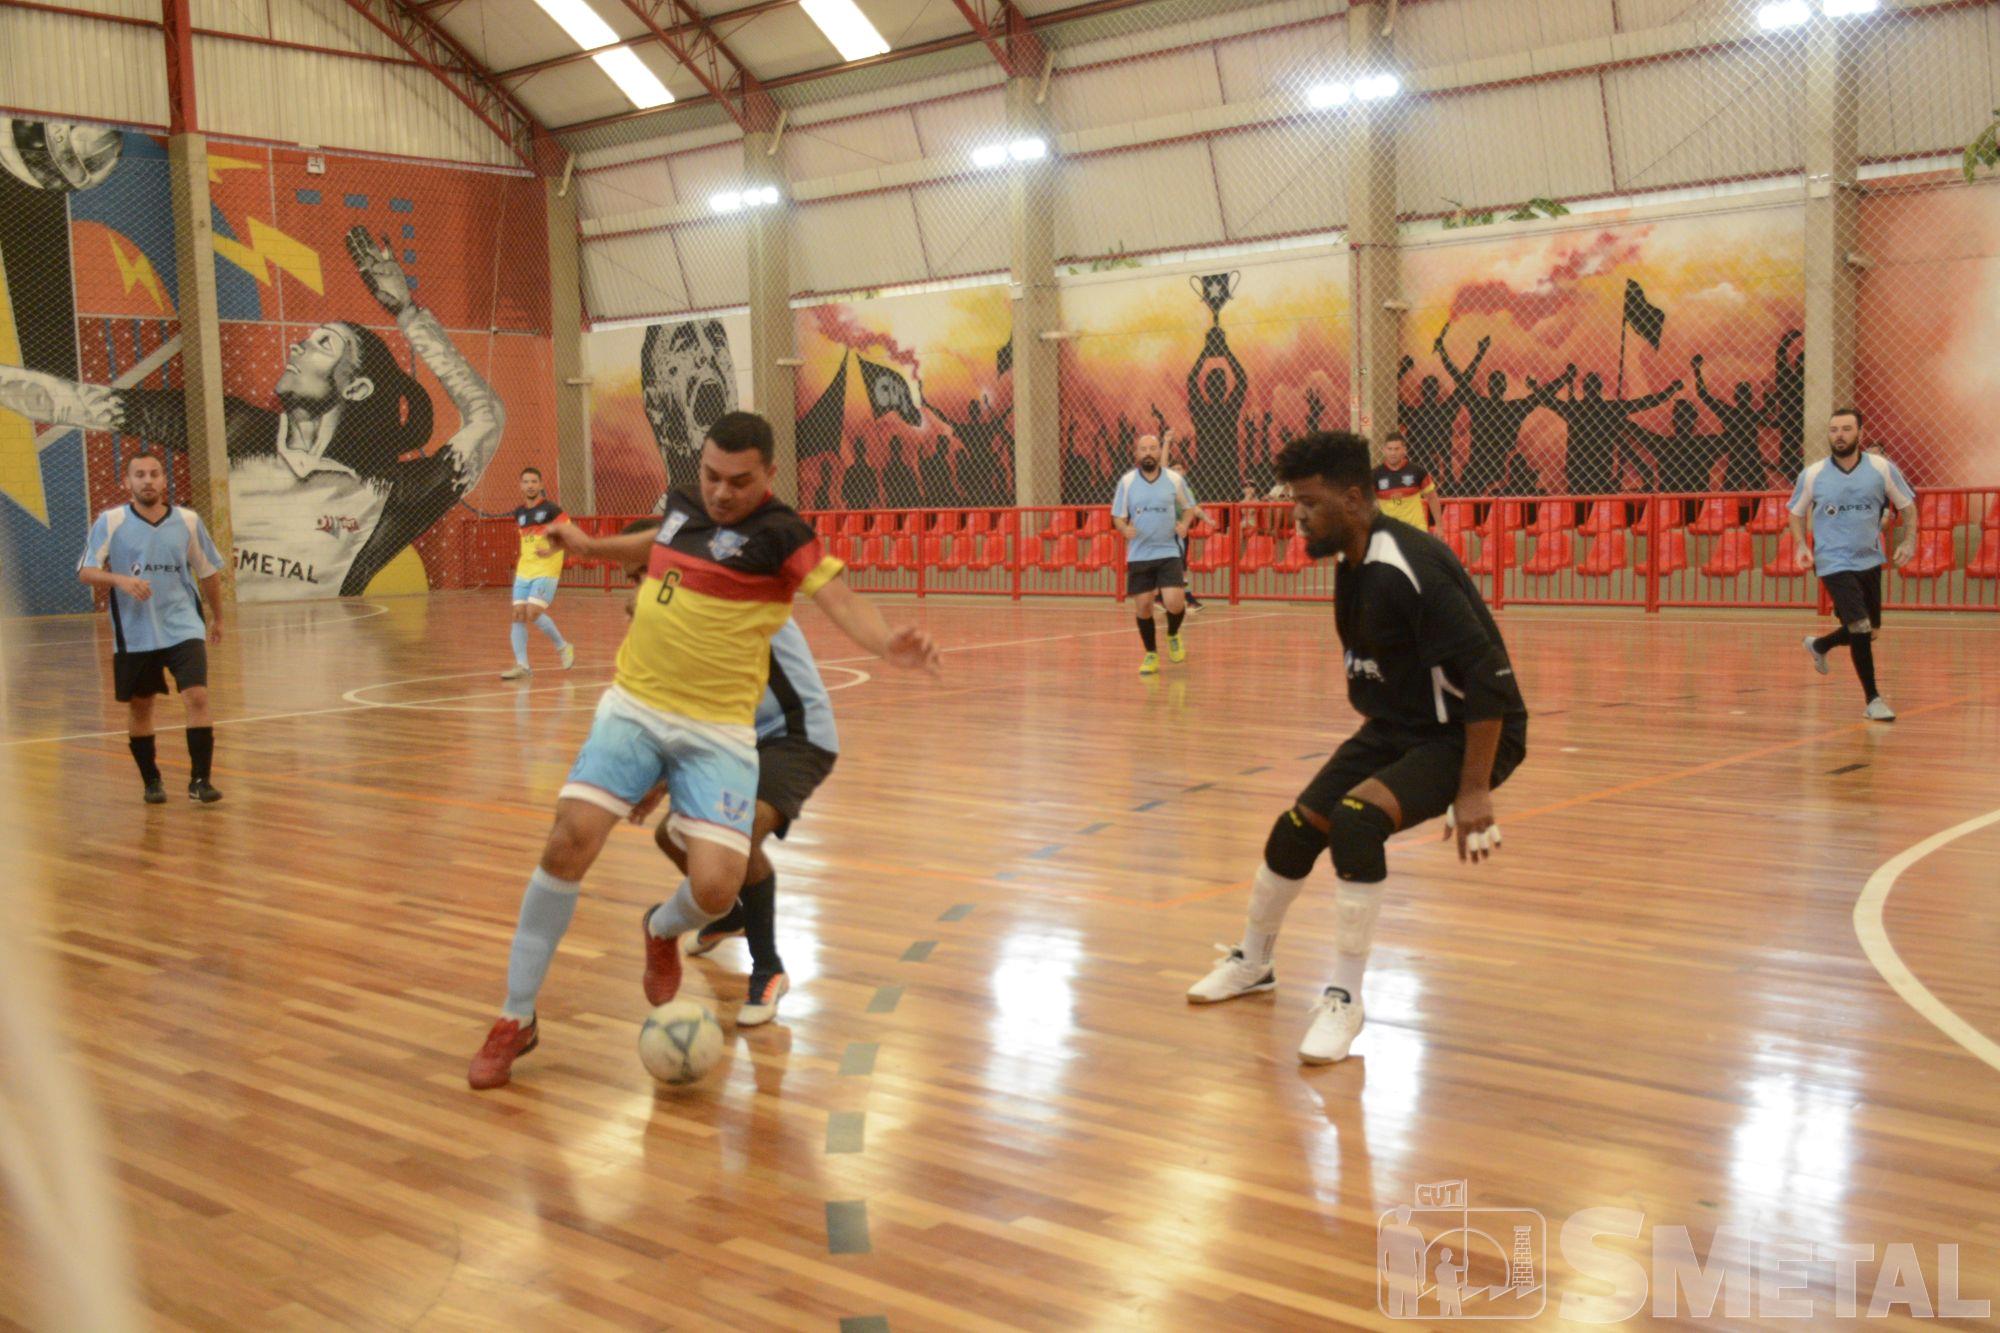 Foguinho/Imprensa SMetal , Taça Papagaio de Futsal tem mais uma rodada; confira os resultados 